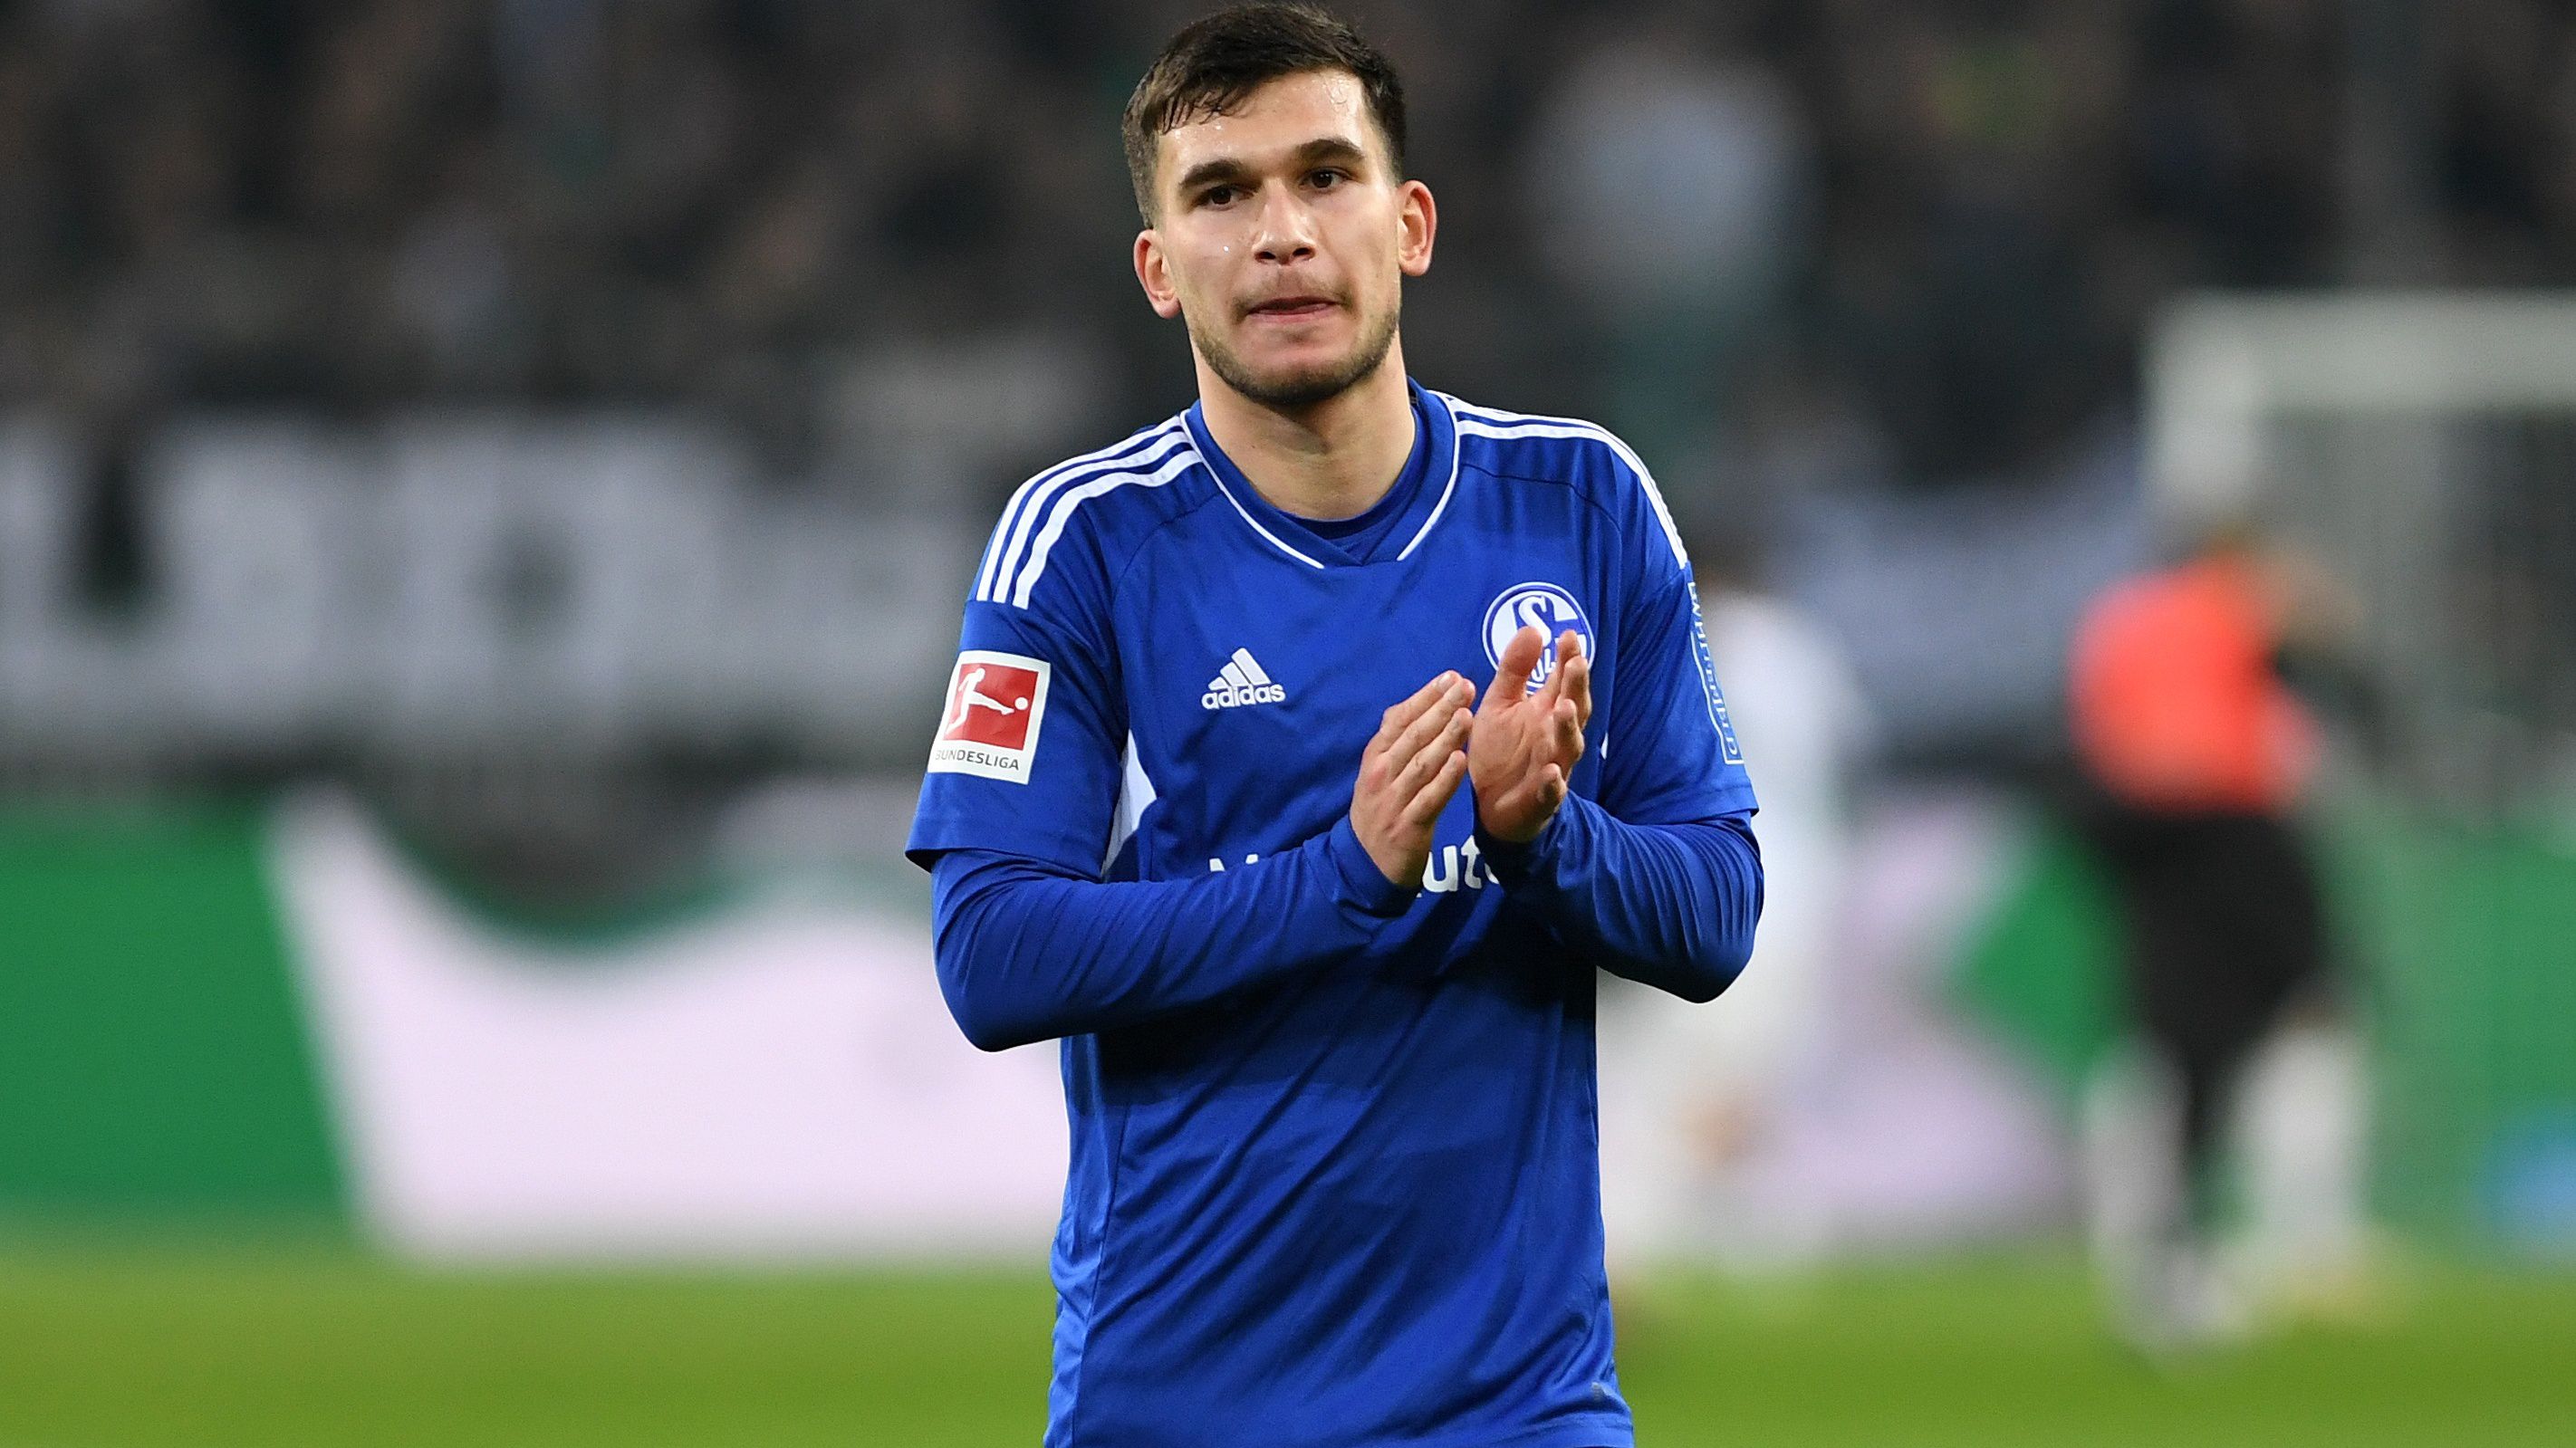 A német helyett a török válogatottban futballozna a Schalke játékosa